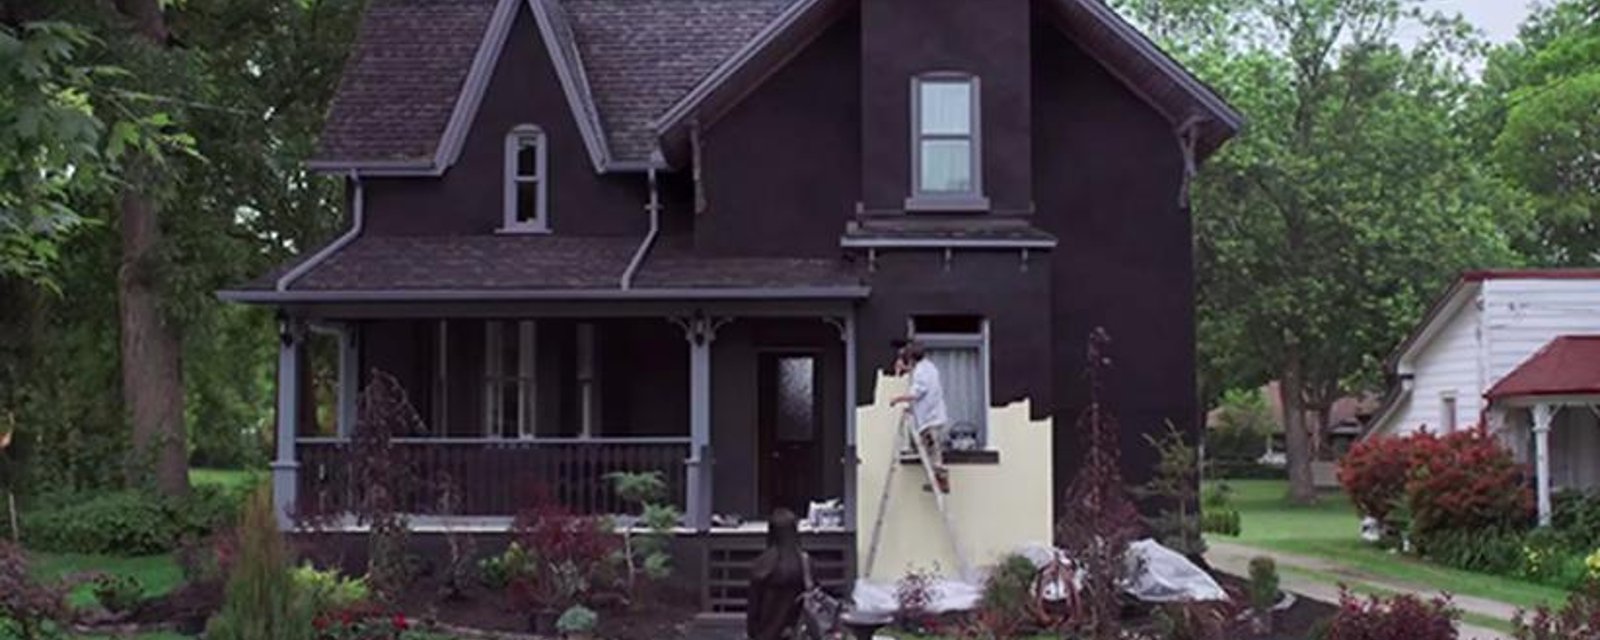 Un homme peint sa maison en noir afin de lancer un message fort!